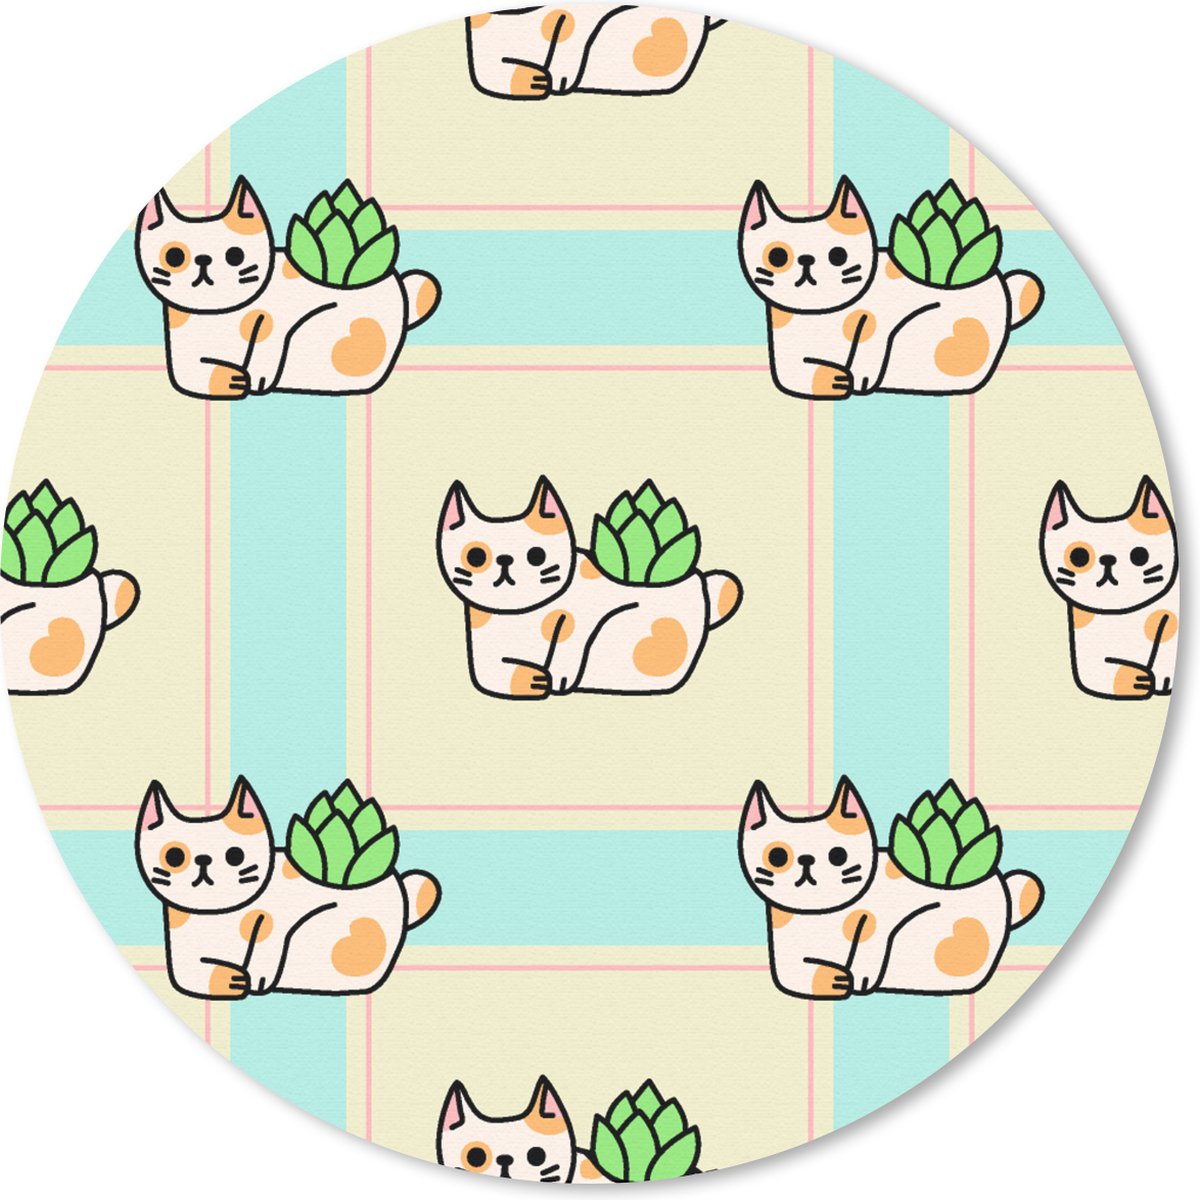 Muismat - Mousepad - Rond - Katten - Planten - Pastel - Kind - Patroon - 50x50 cm - Ronde muismat